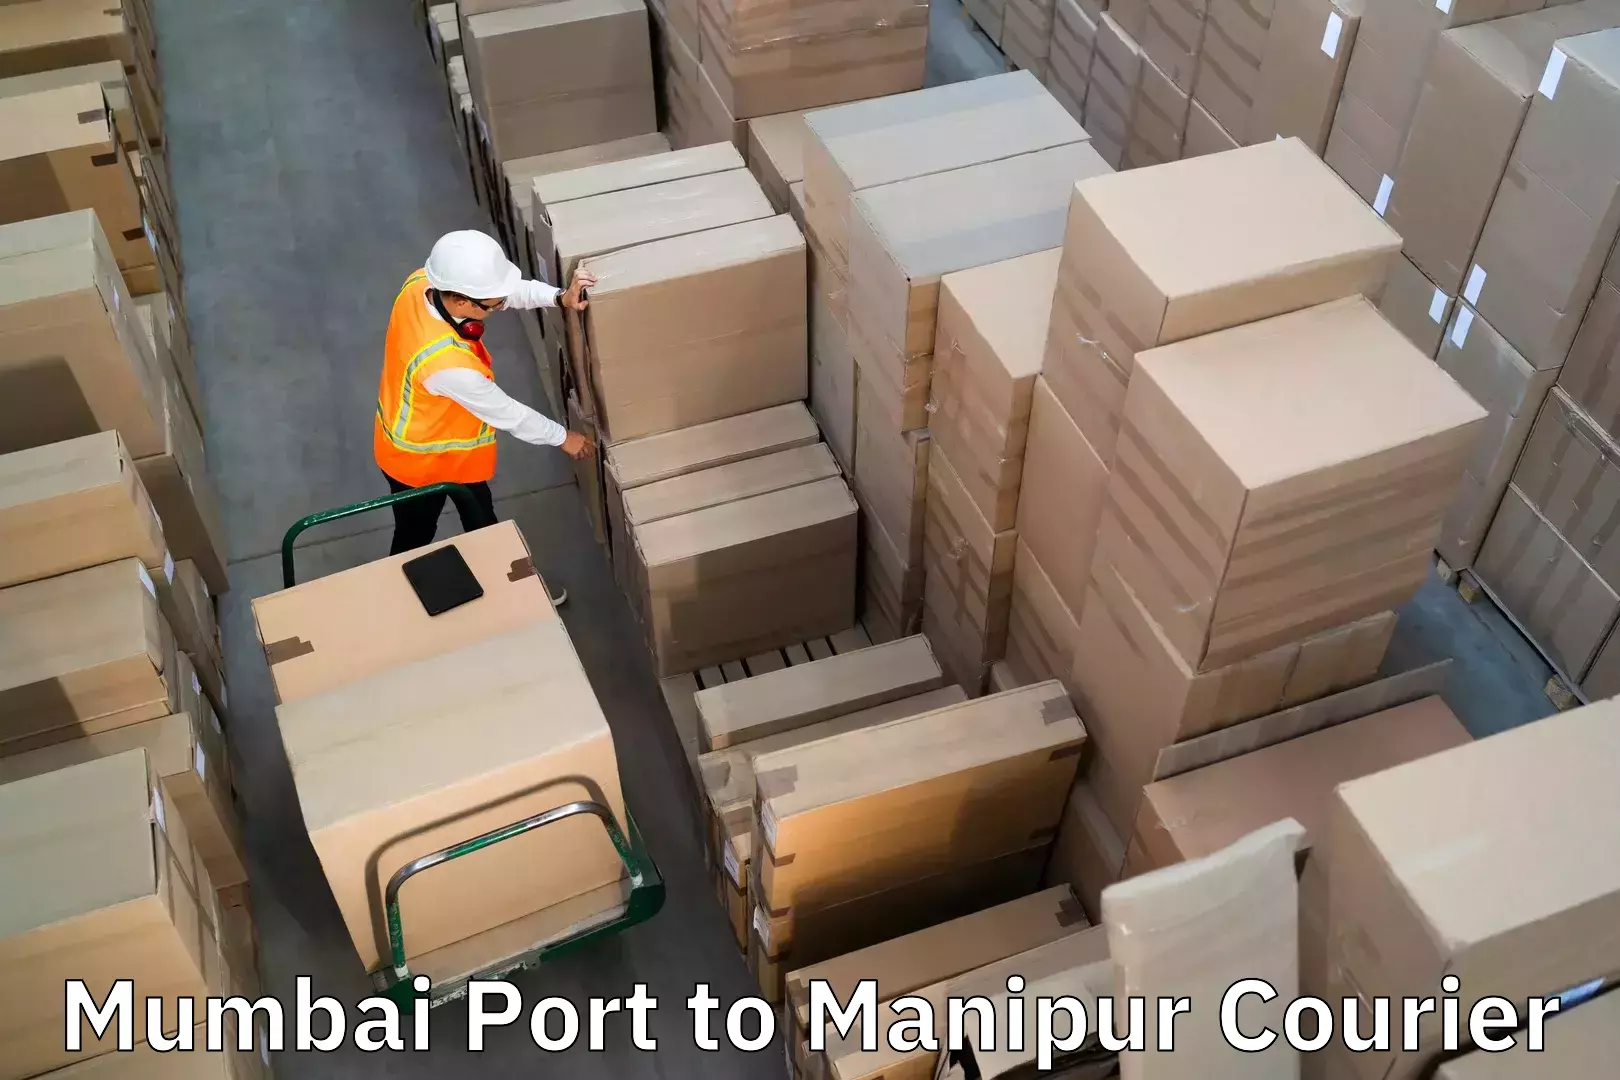 Luggage delivery network Mumbai Port to Ukhrul